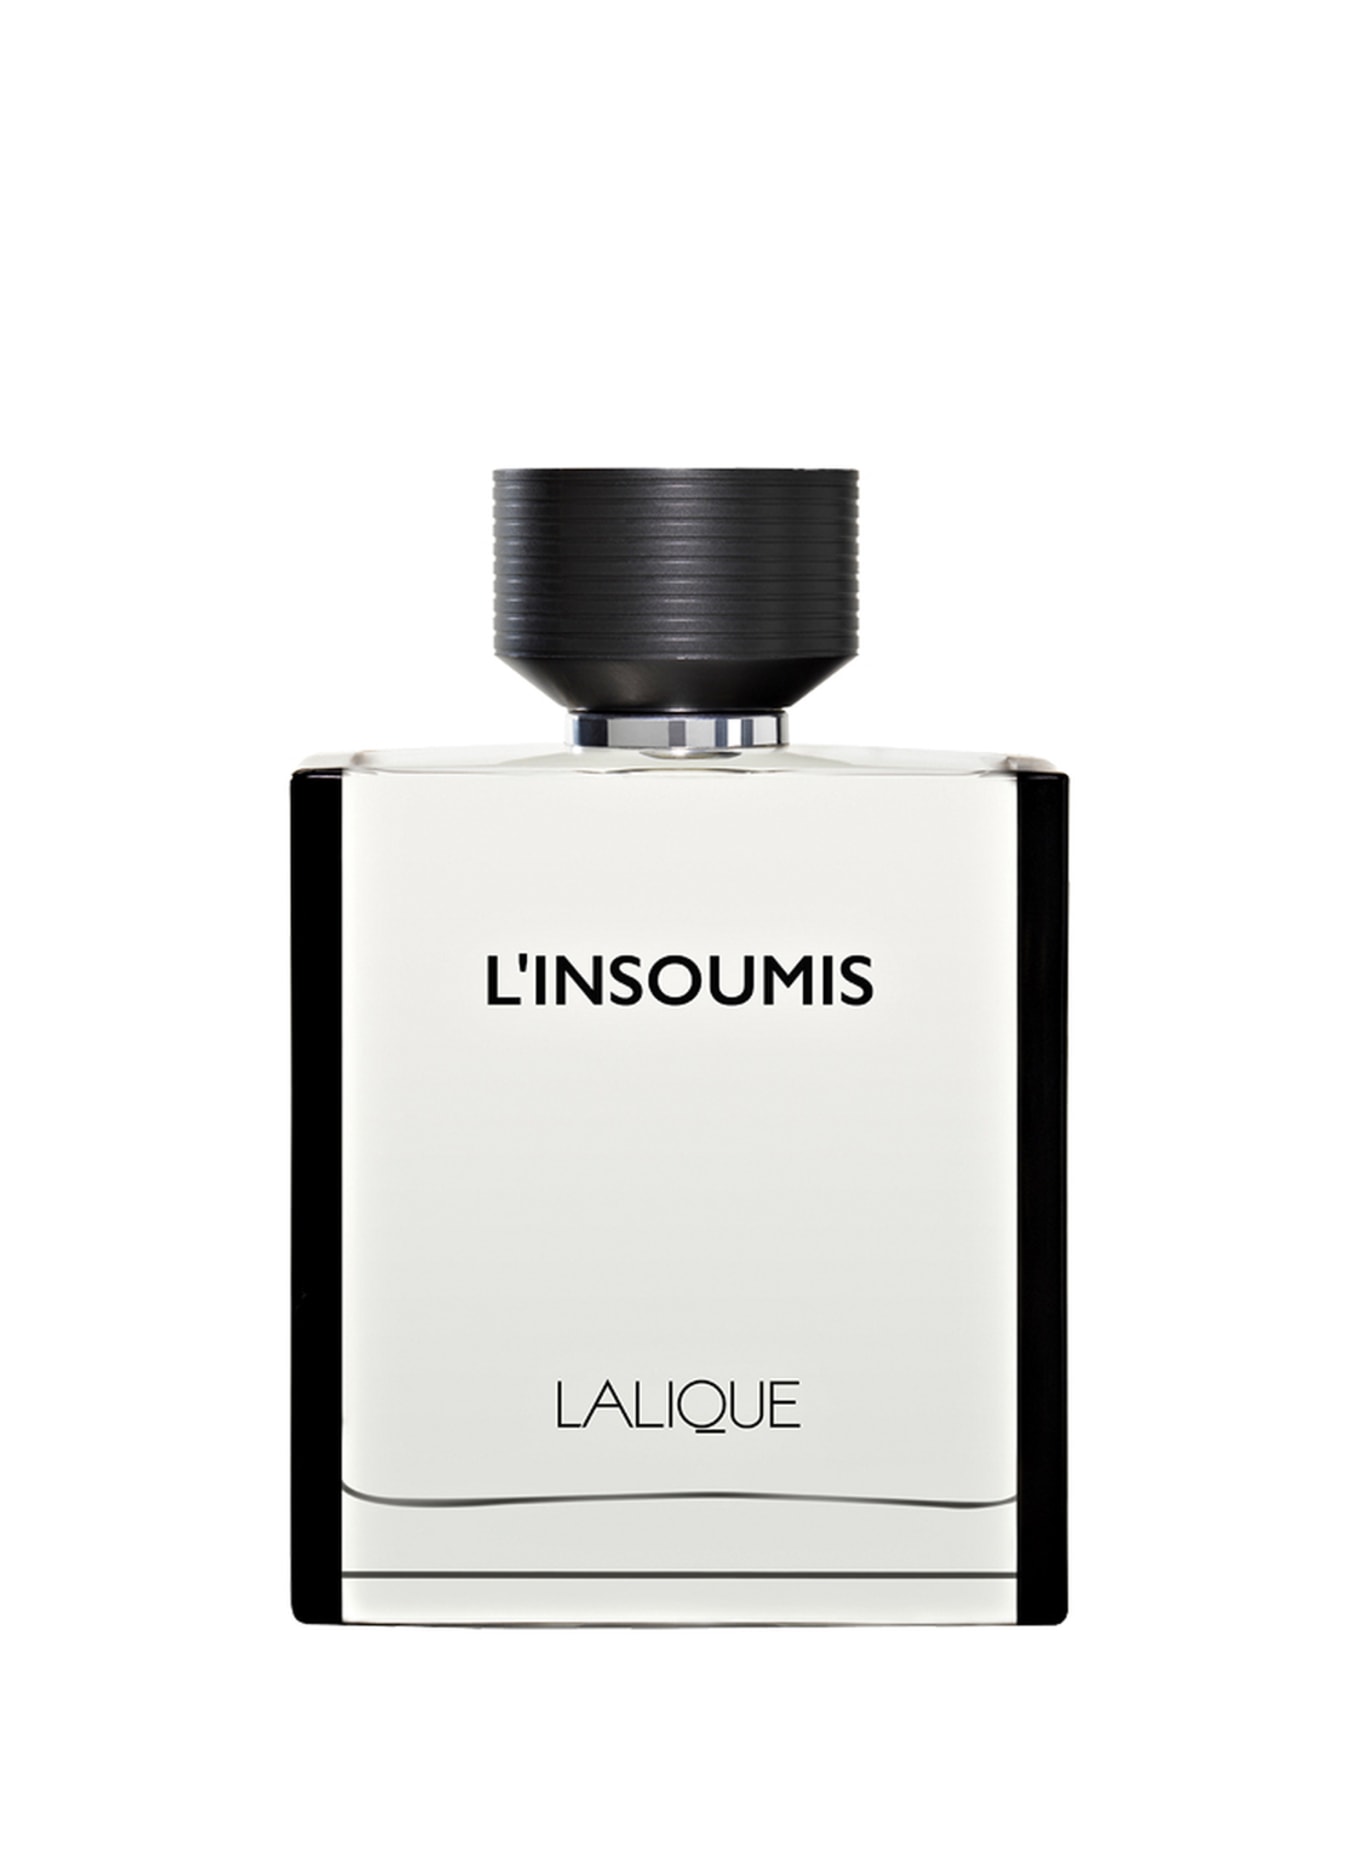 LALIQUE PARFUMS L'INSOUMIS (Obrazek 1)